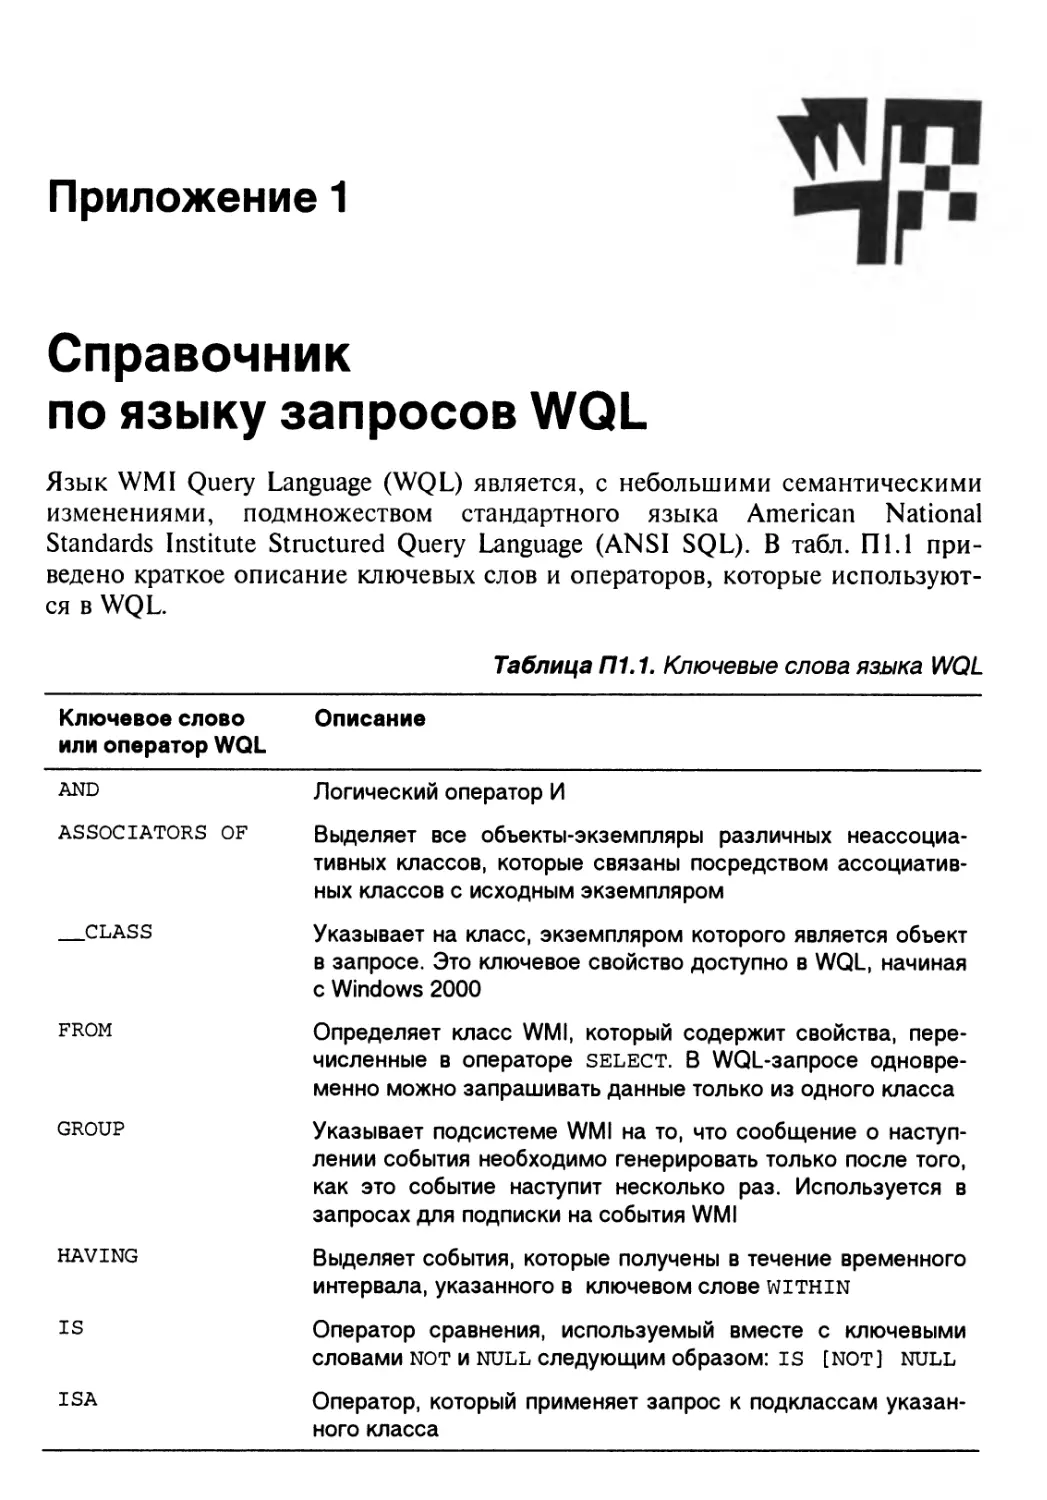 Приложение 1. Справочник по языку запросов WQL